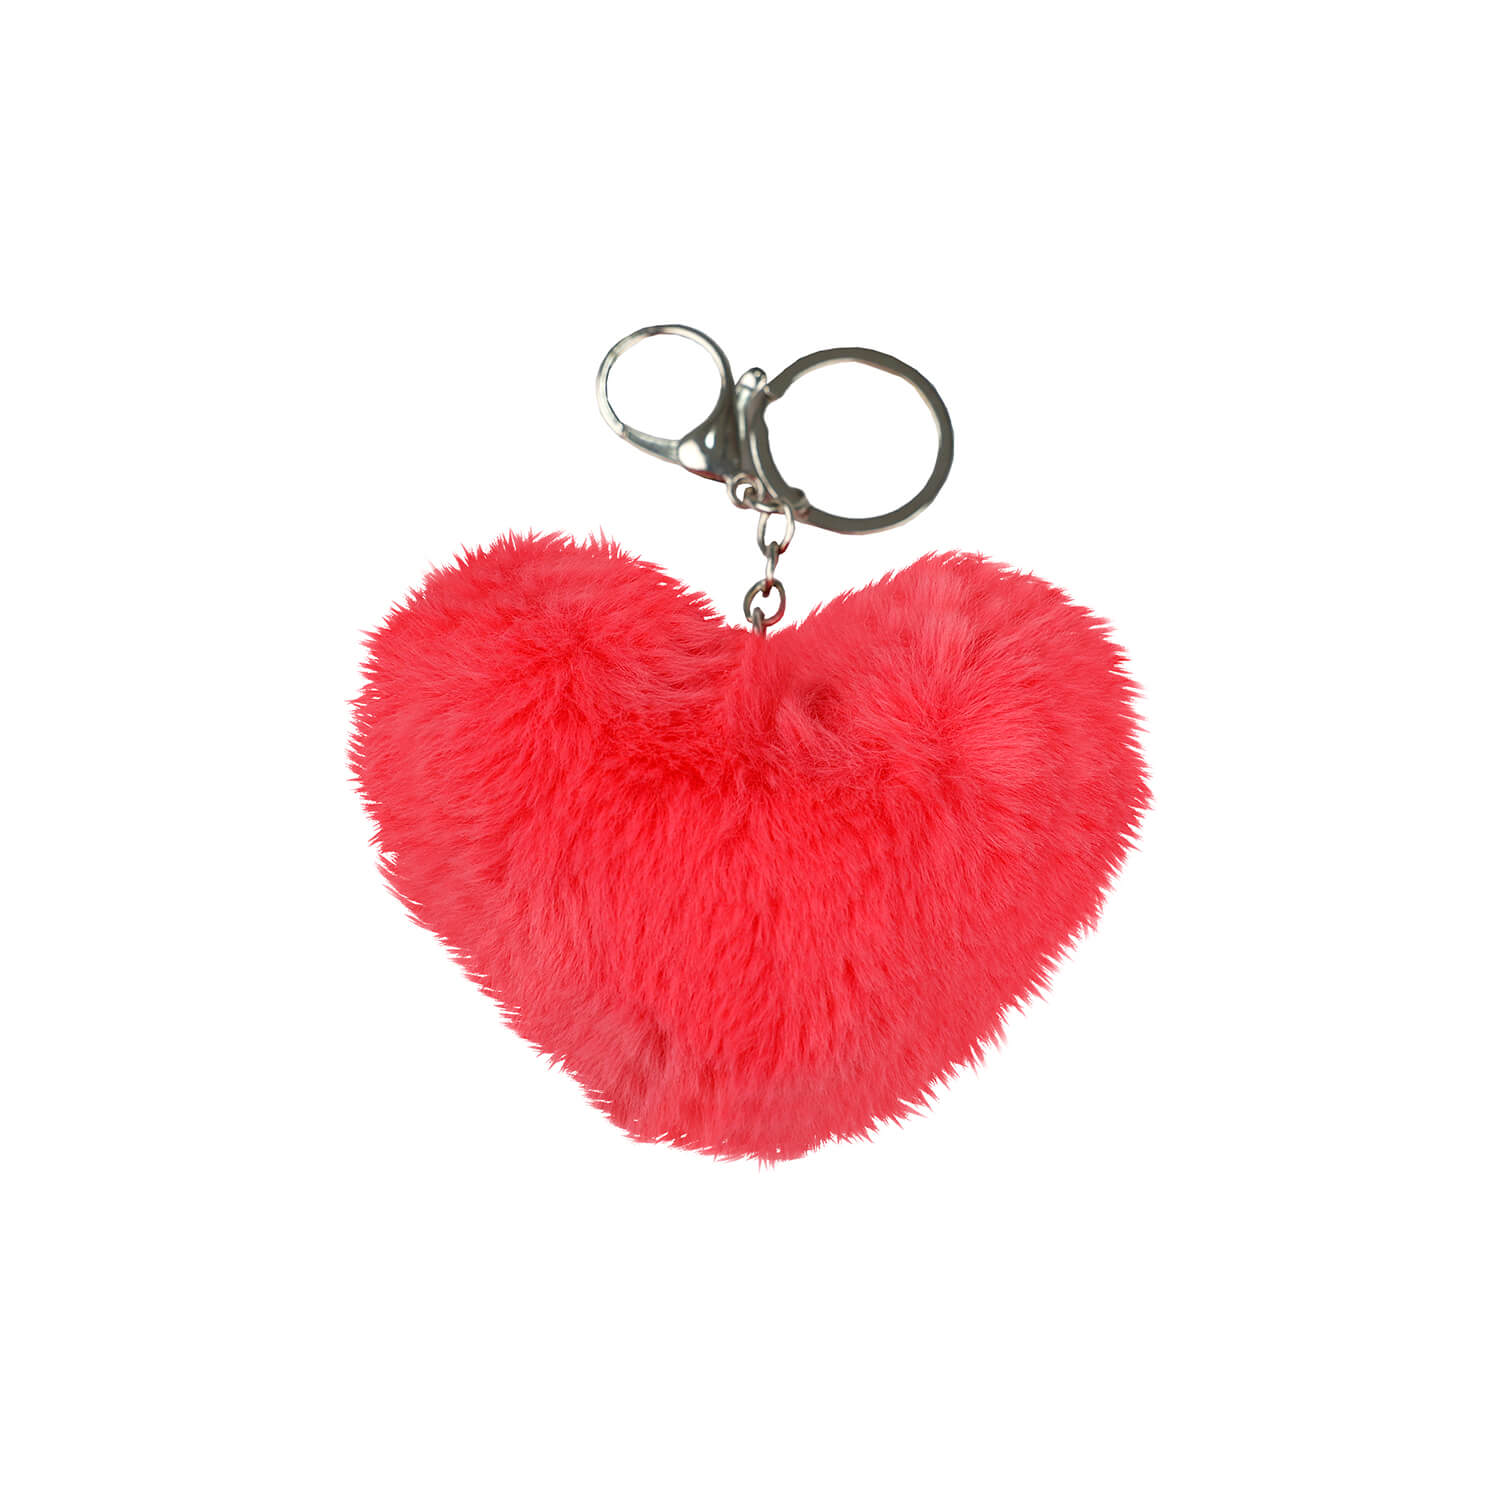 Schlüsselhalter Heart Hot Pink Fluffy